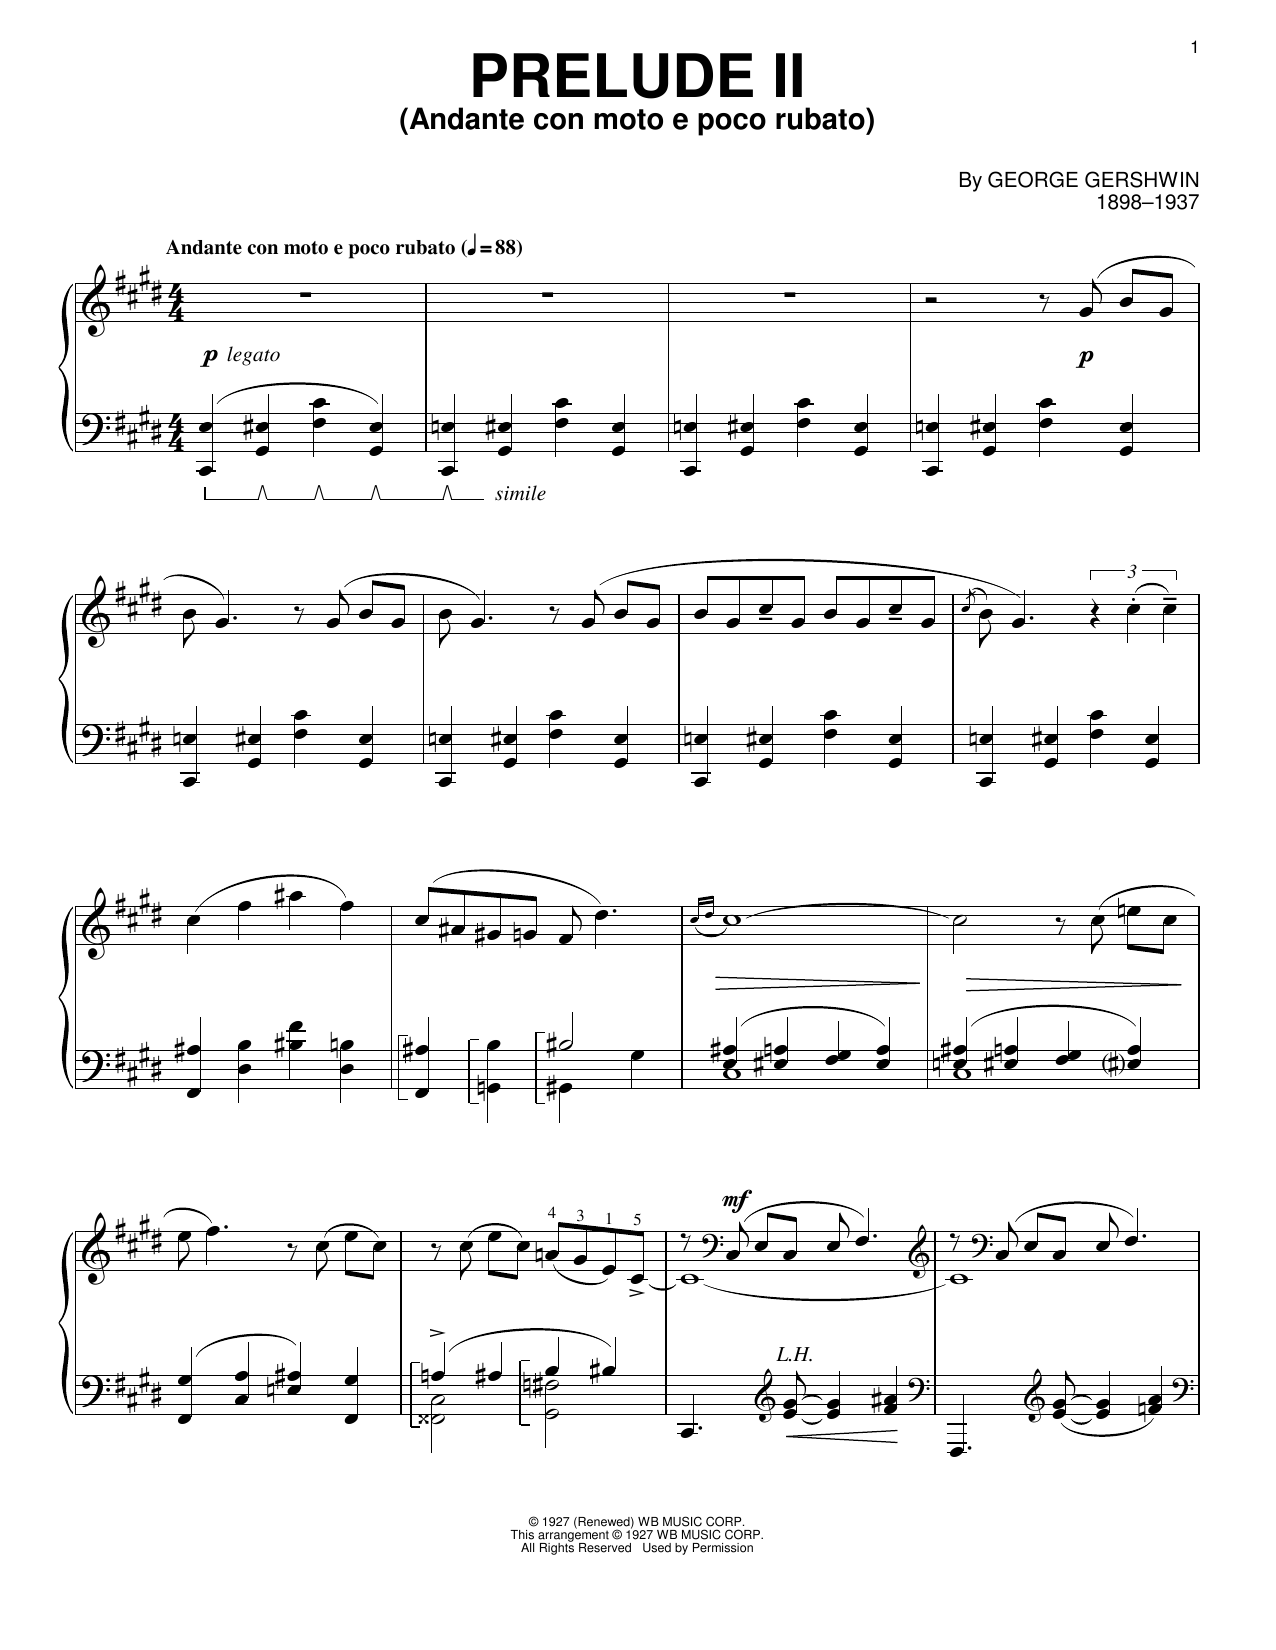 George Gershwin Prelude II (Andante Con Moto E Poco Rubato) Sheet Music Notes & Chords for Piano - Download or Print PDF